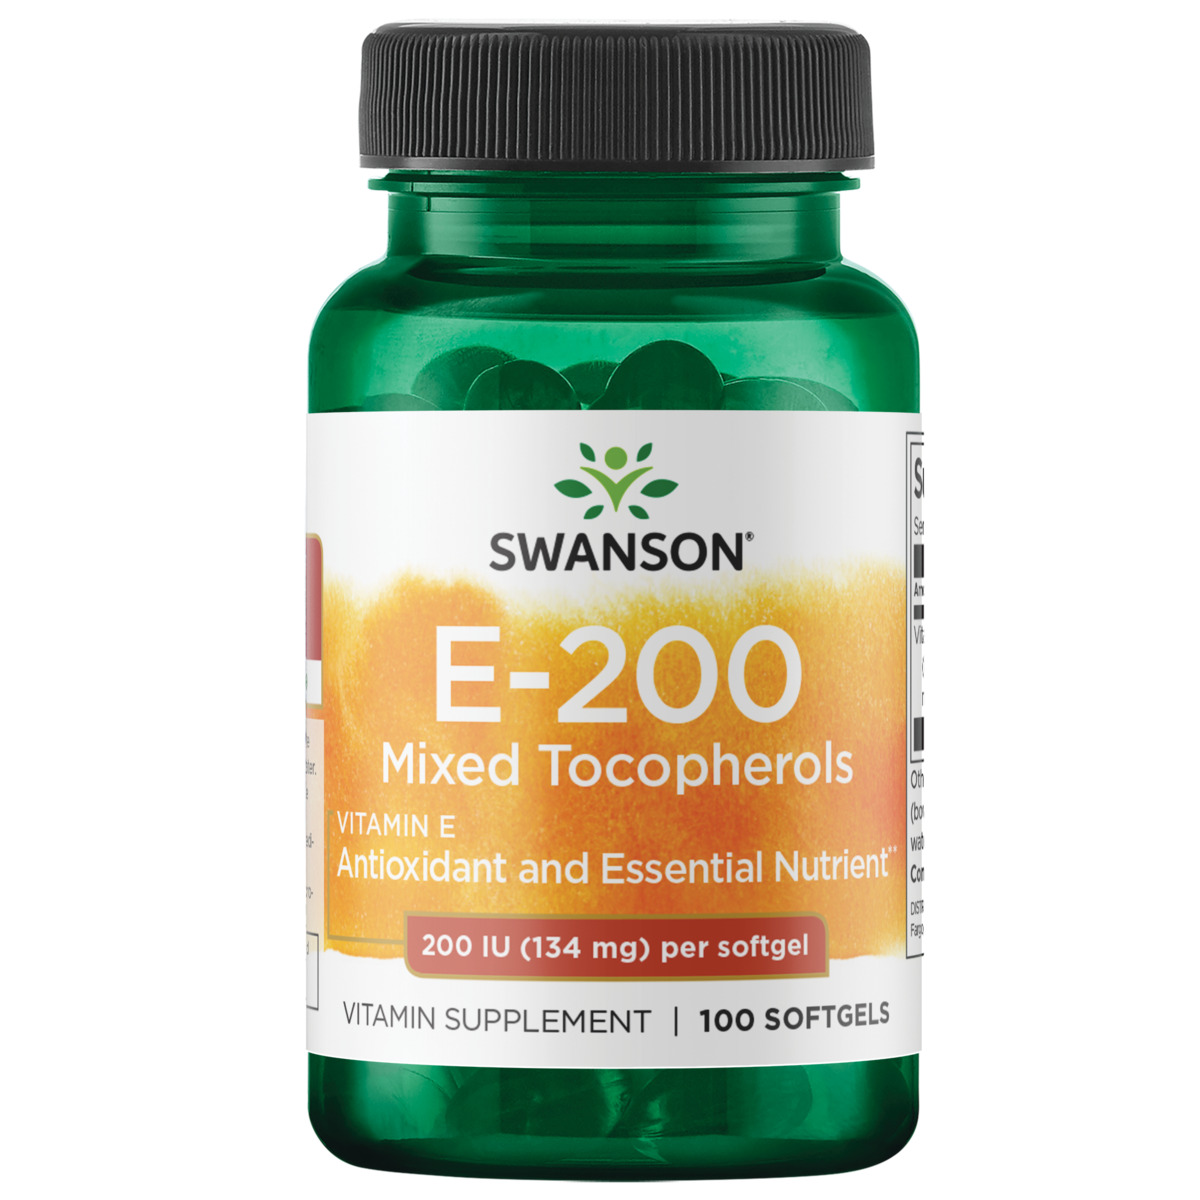 Swanson Vitamin E Mixed Tocopherols 200 Iu 100 Softgels